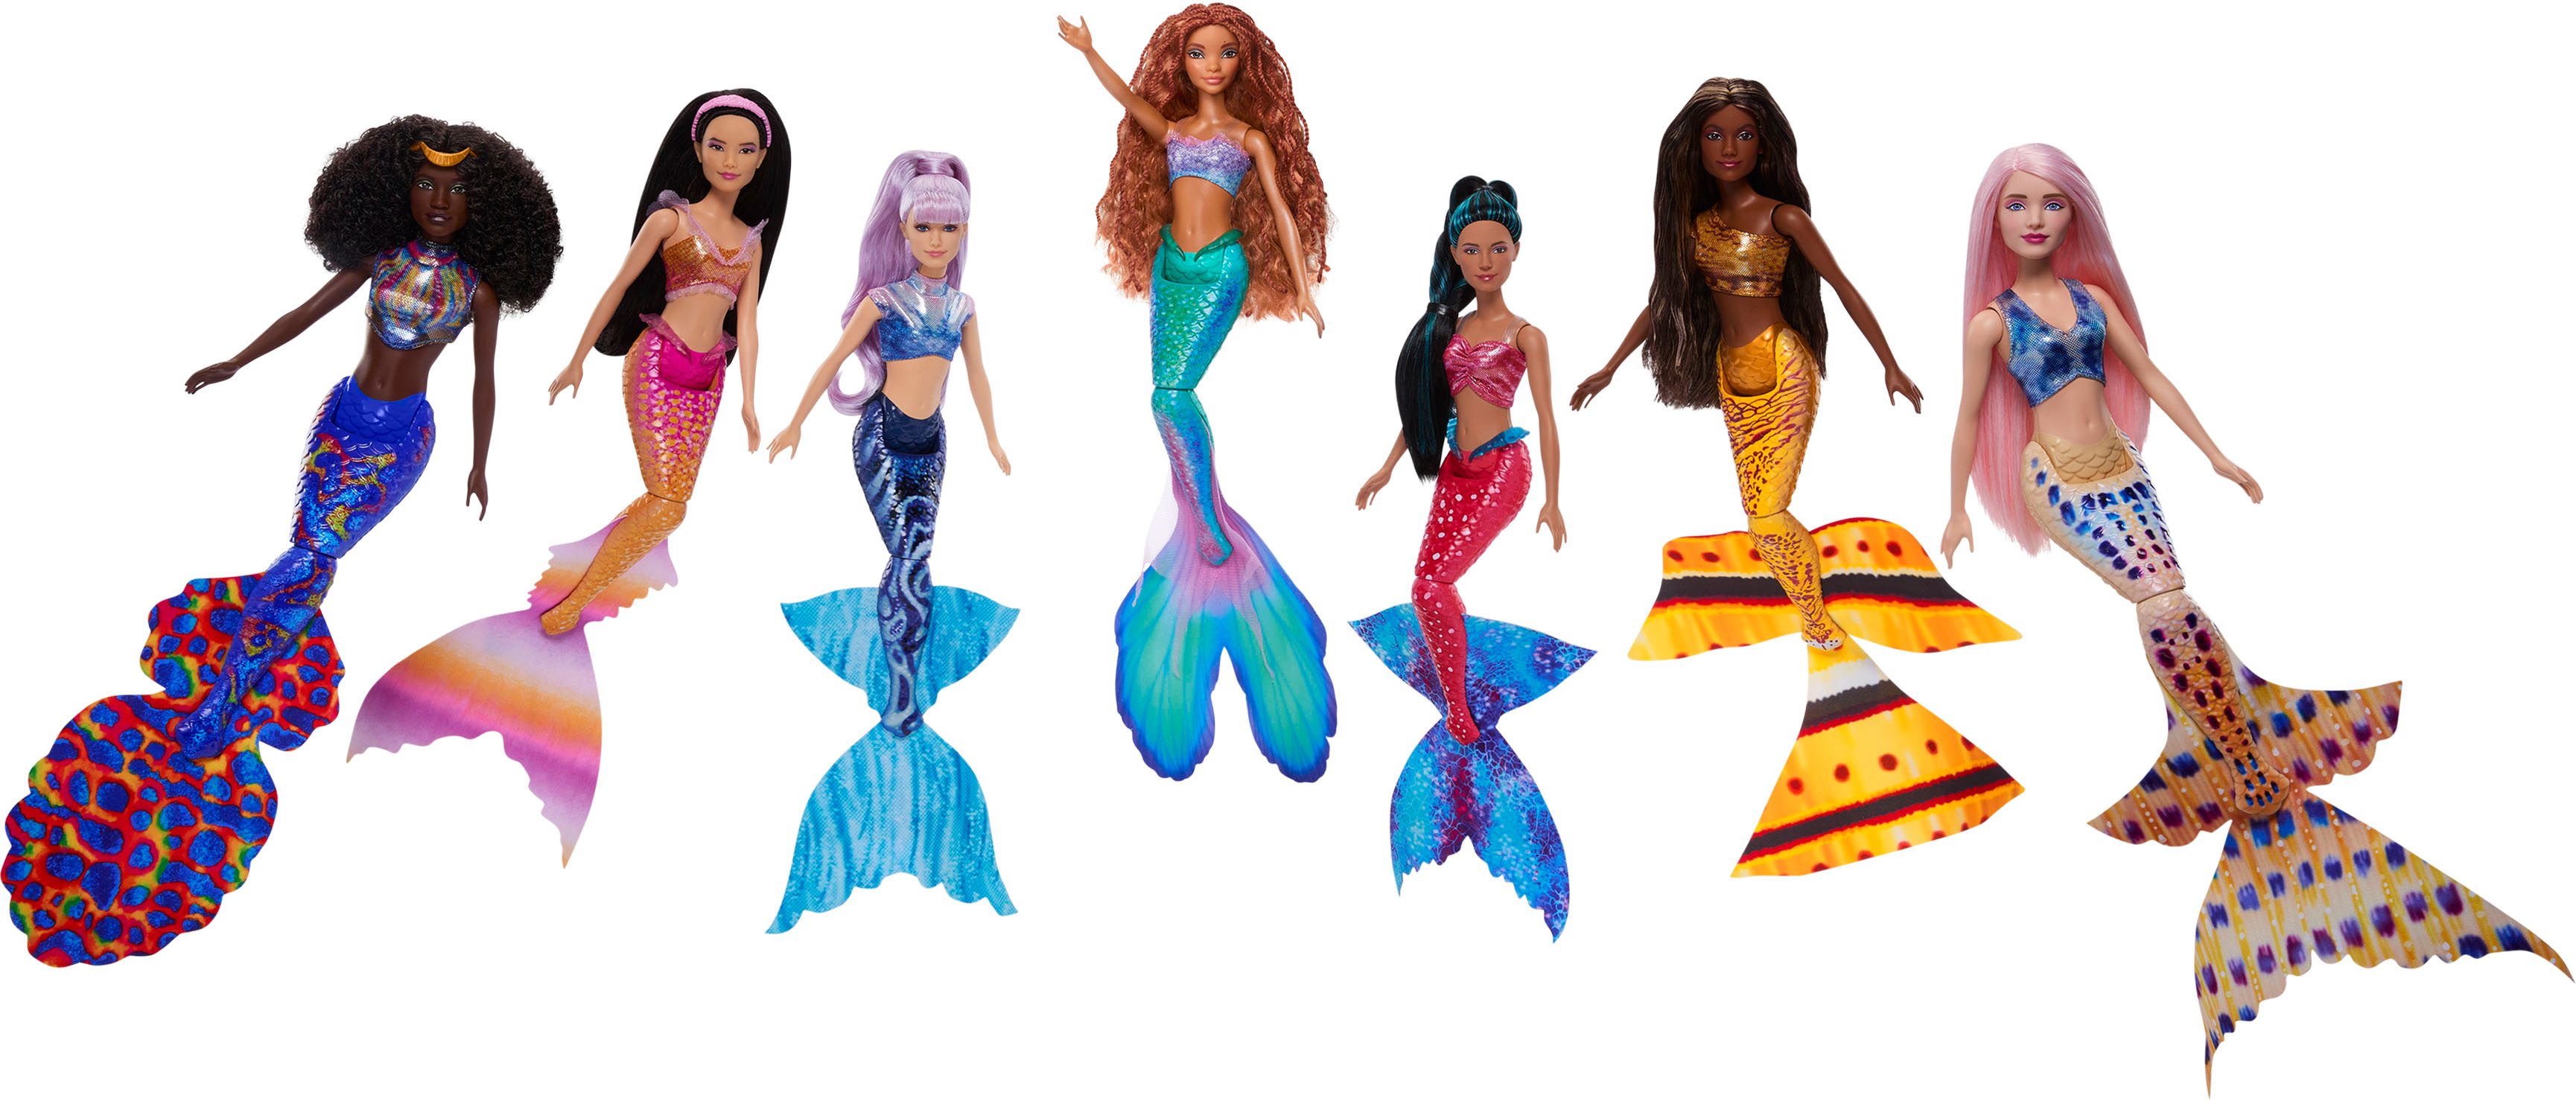 Disney The Little Mermaid Ultimate Ariel Sisters 12.75 Dolls (7-Pack)  HLX18 - Best Buy